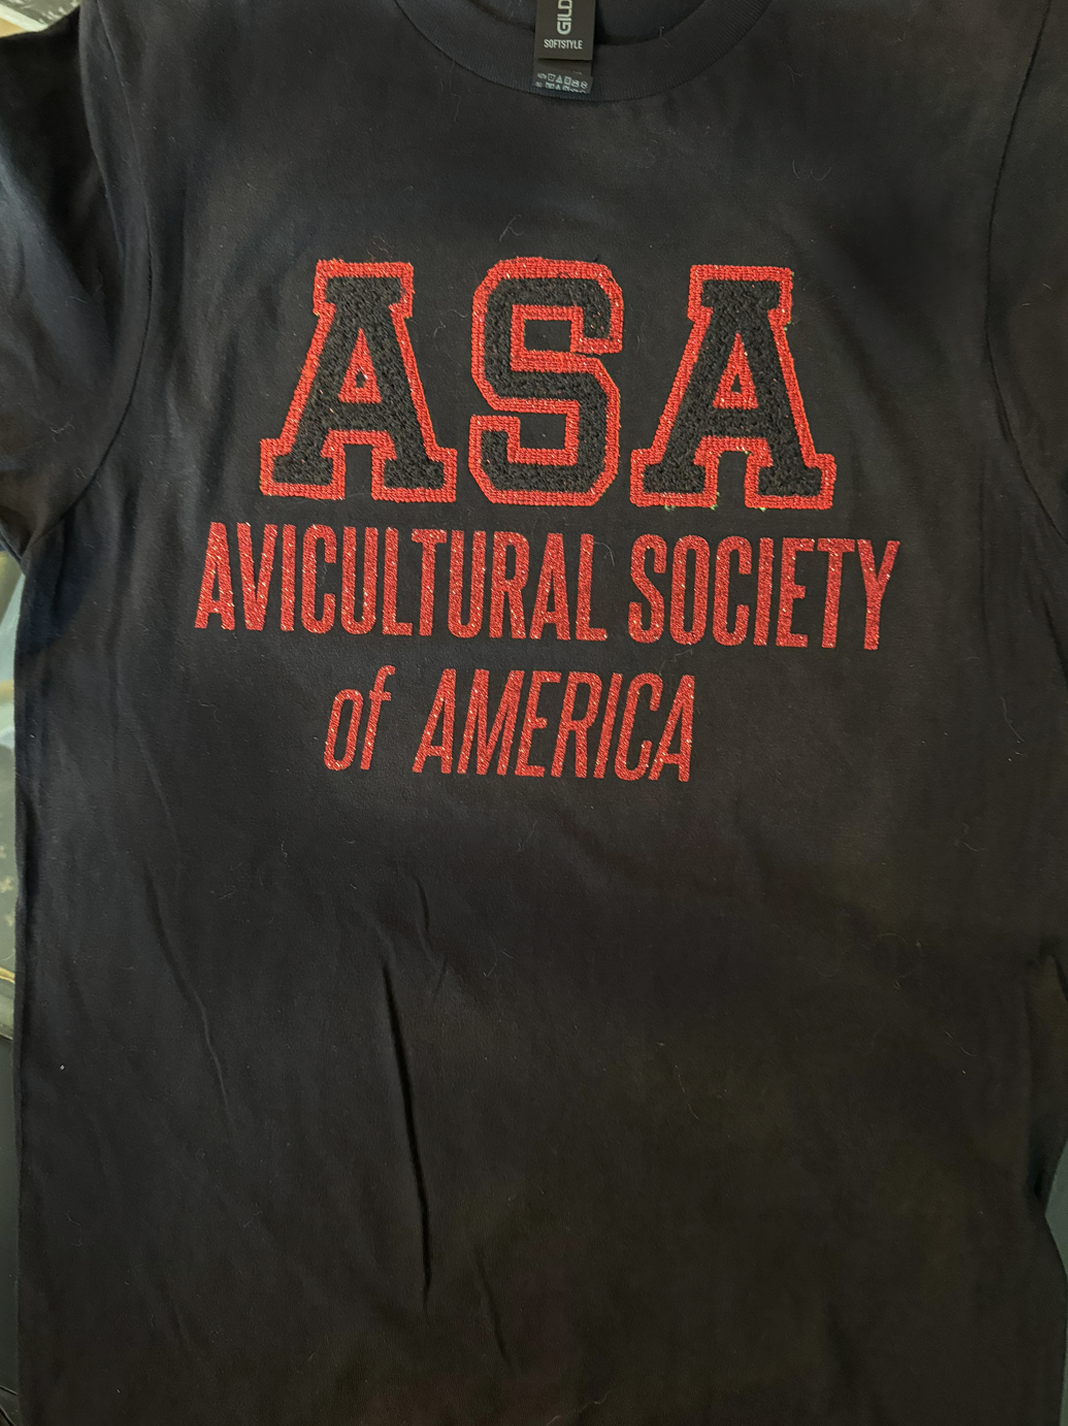 ASA Varsity Black T-shirt